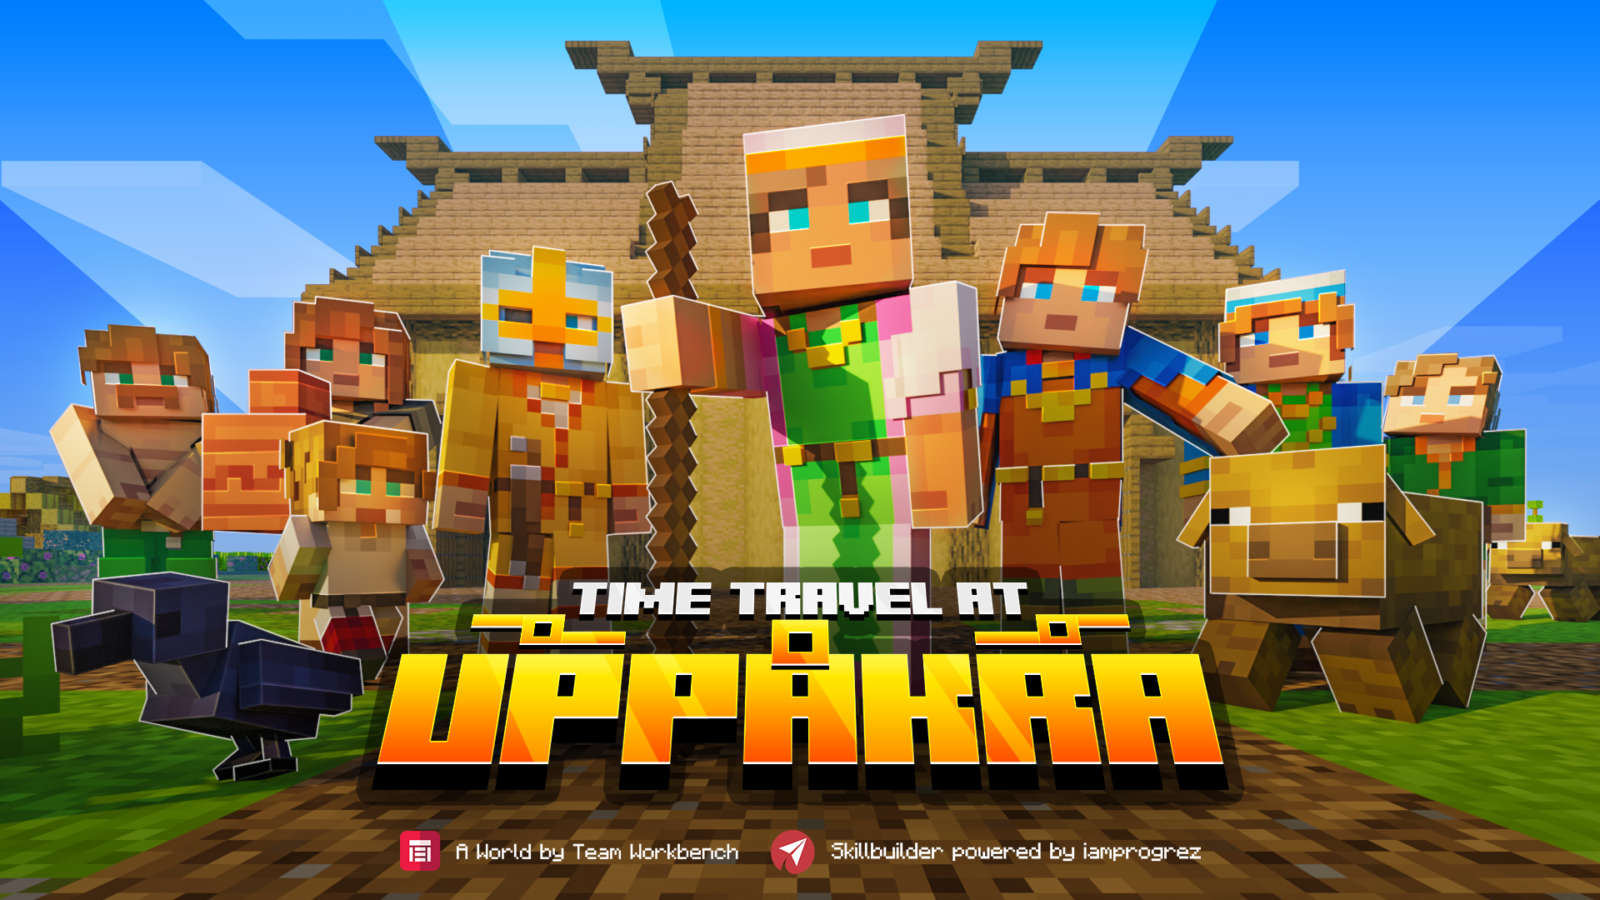 Tidsresor i Uppakra Minecraft skärmdump